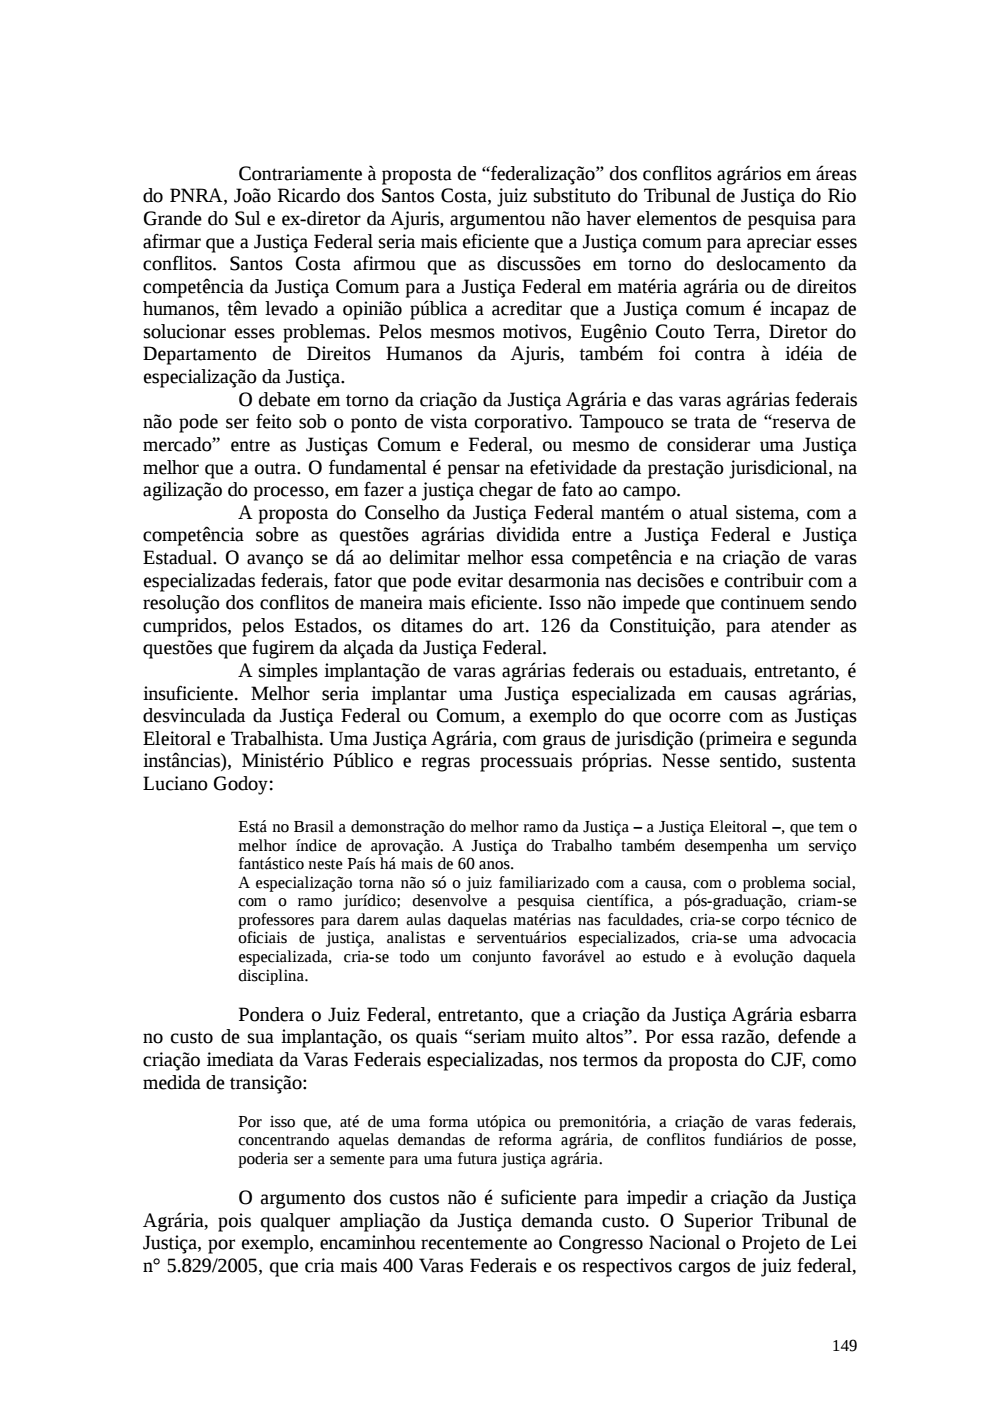 Page 149 from Relatório final da comissão